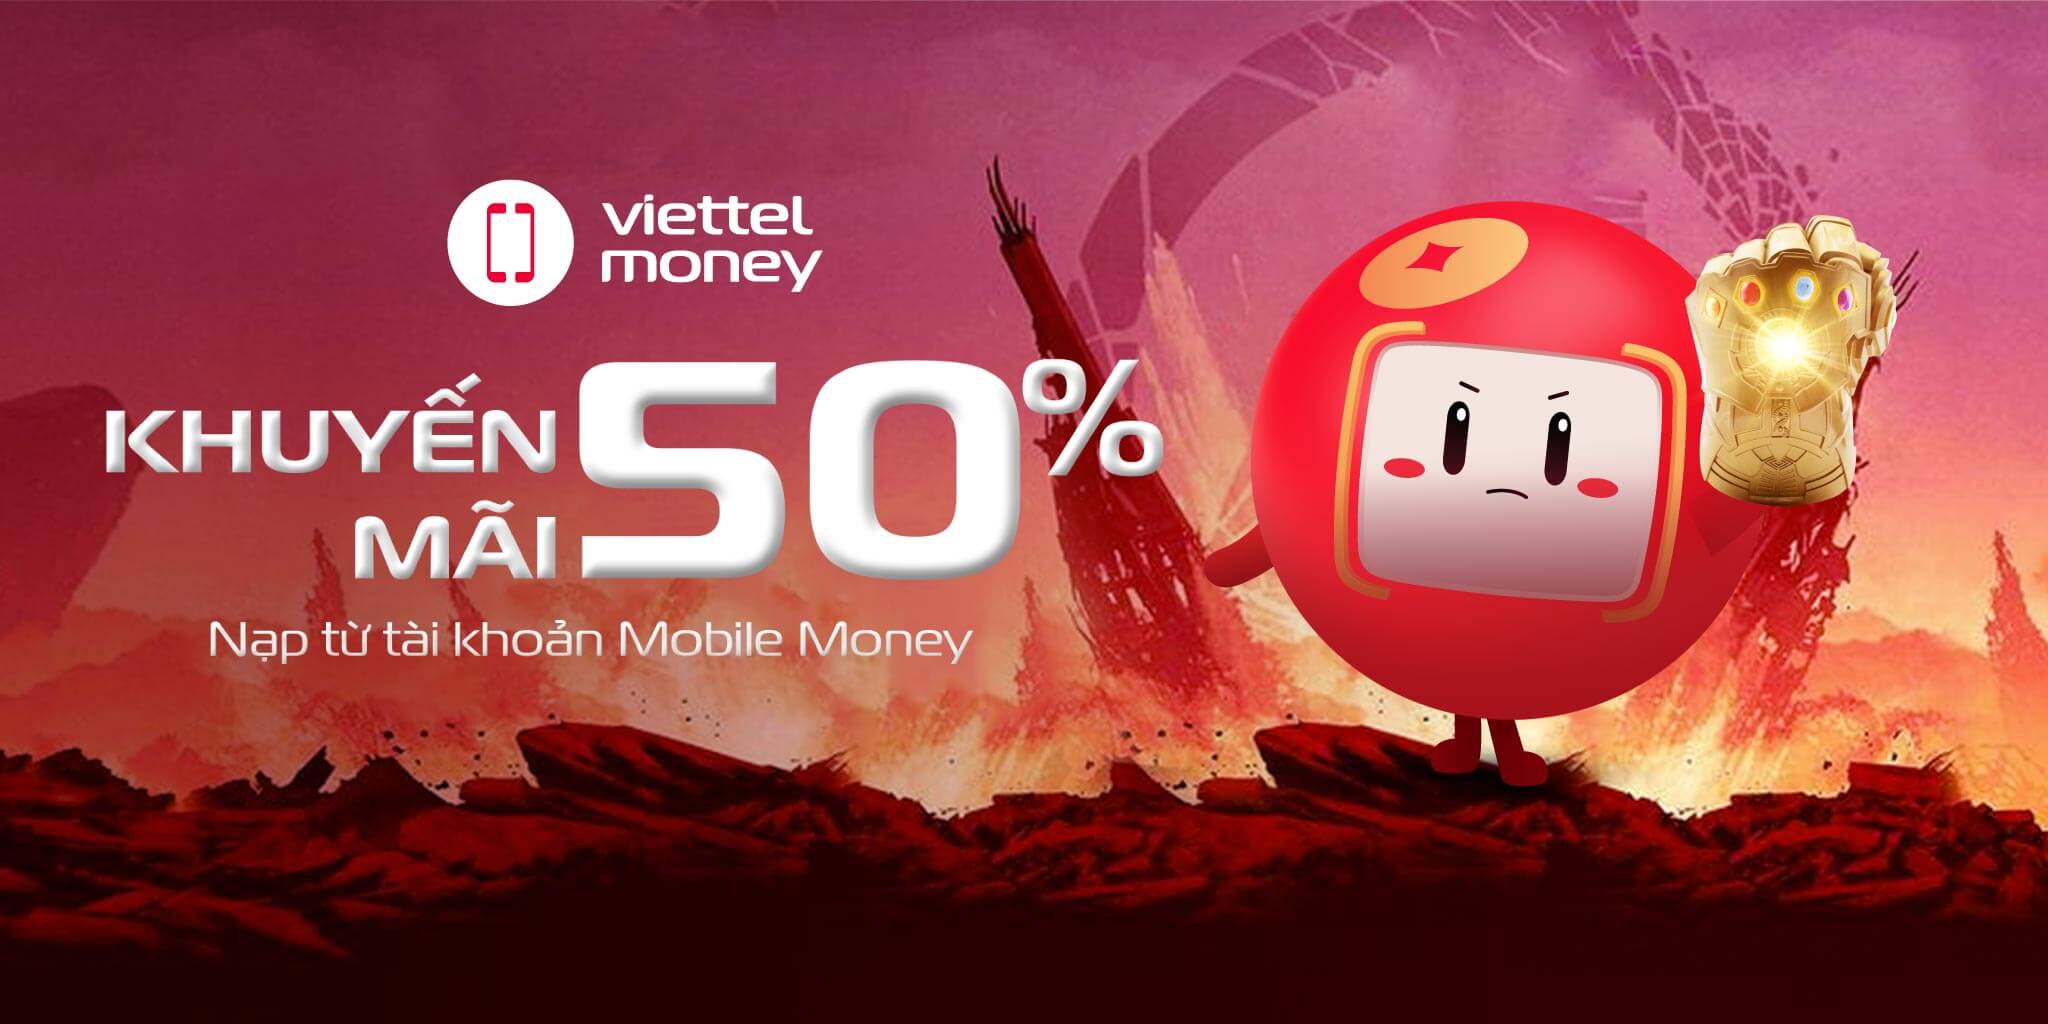 Viettel Money khuyến mãi 50% nạp điện thoại từ tài khoản Mobile Money